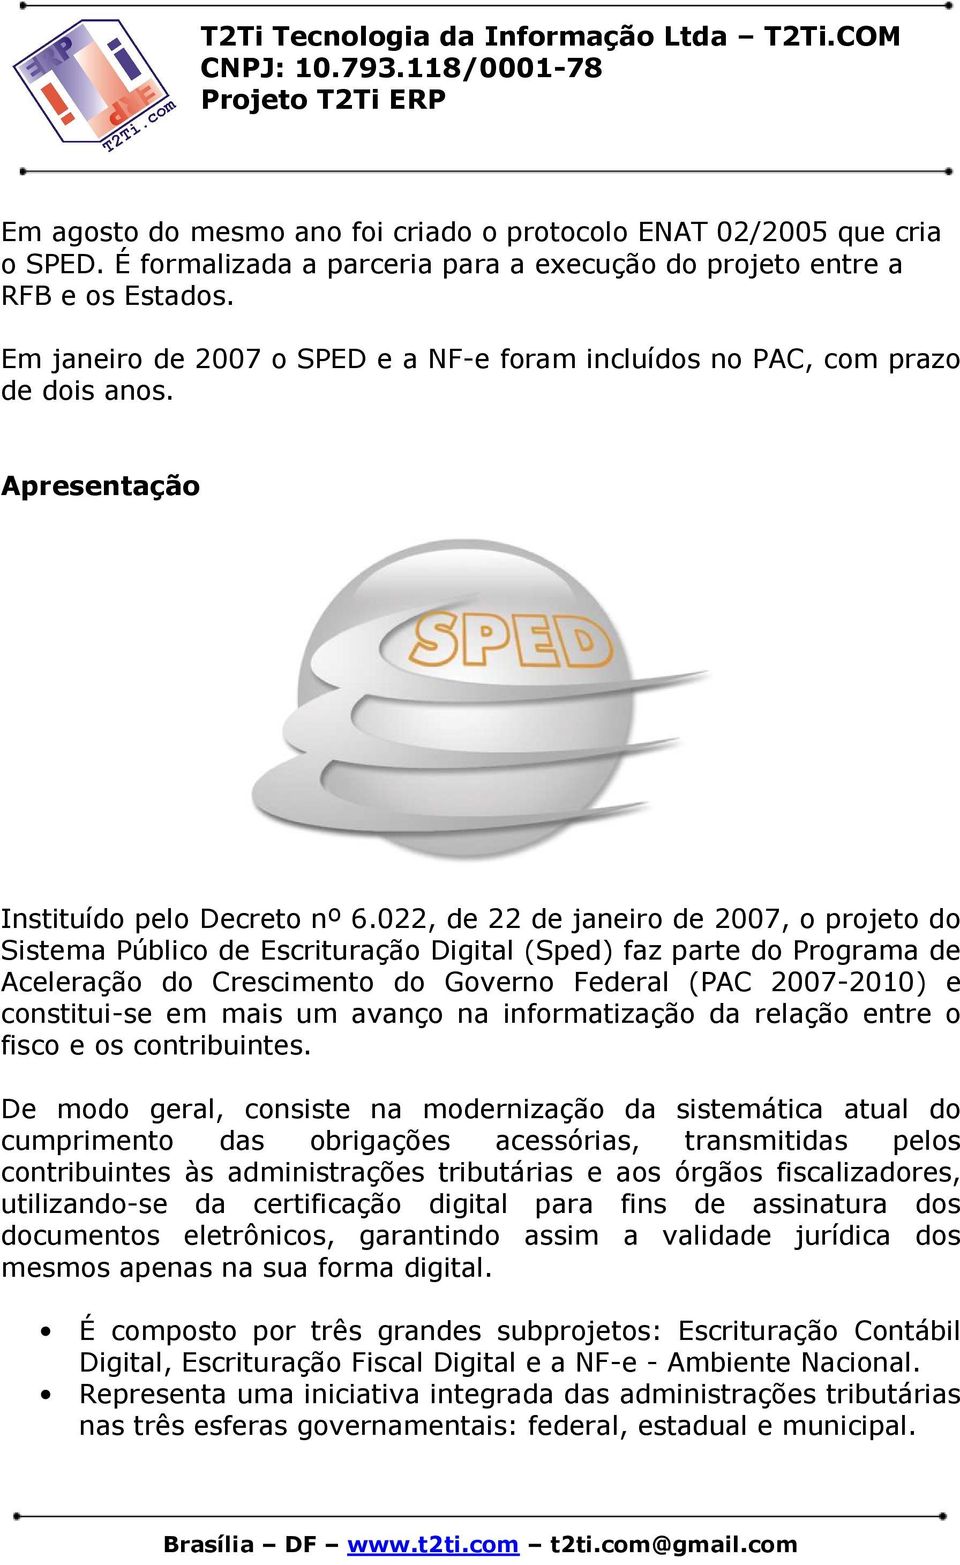 022, de 22 de janeiro de 2007, o projeto do Sistema Público de Escrituração Digital (Sped) faz parte do Programa de Aceleração do Crescimento do Governo Federal (PAC 2007-2010) e constitui-se em mais